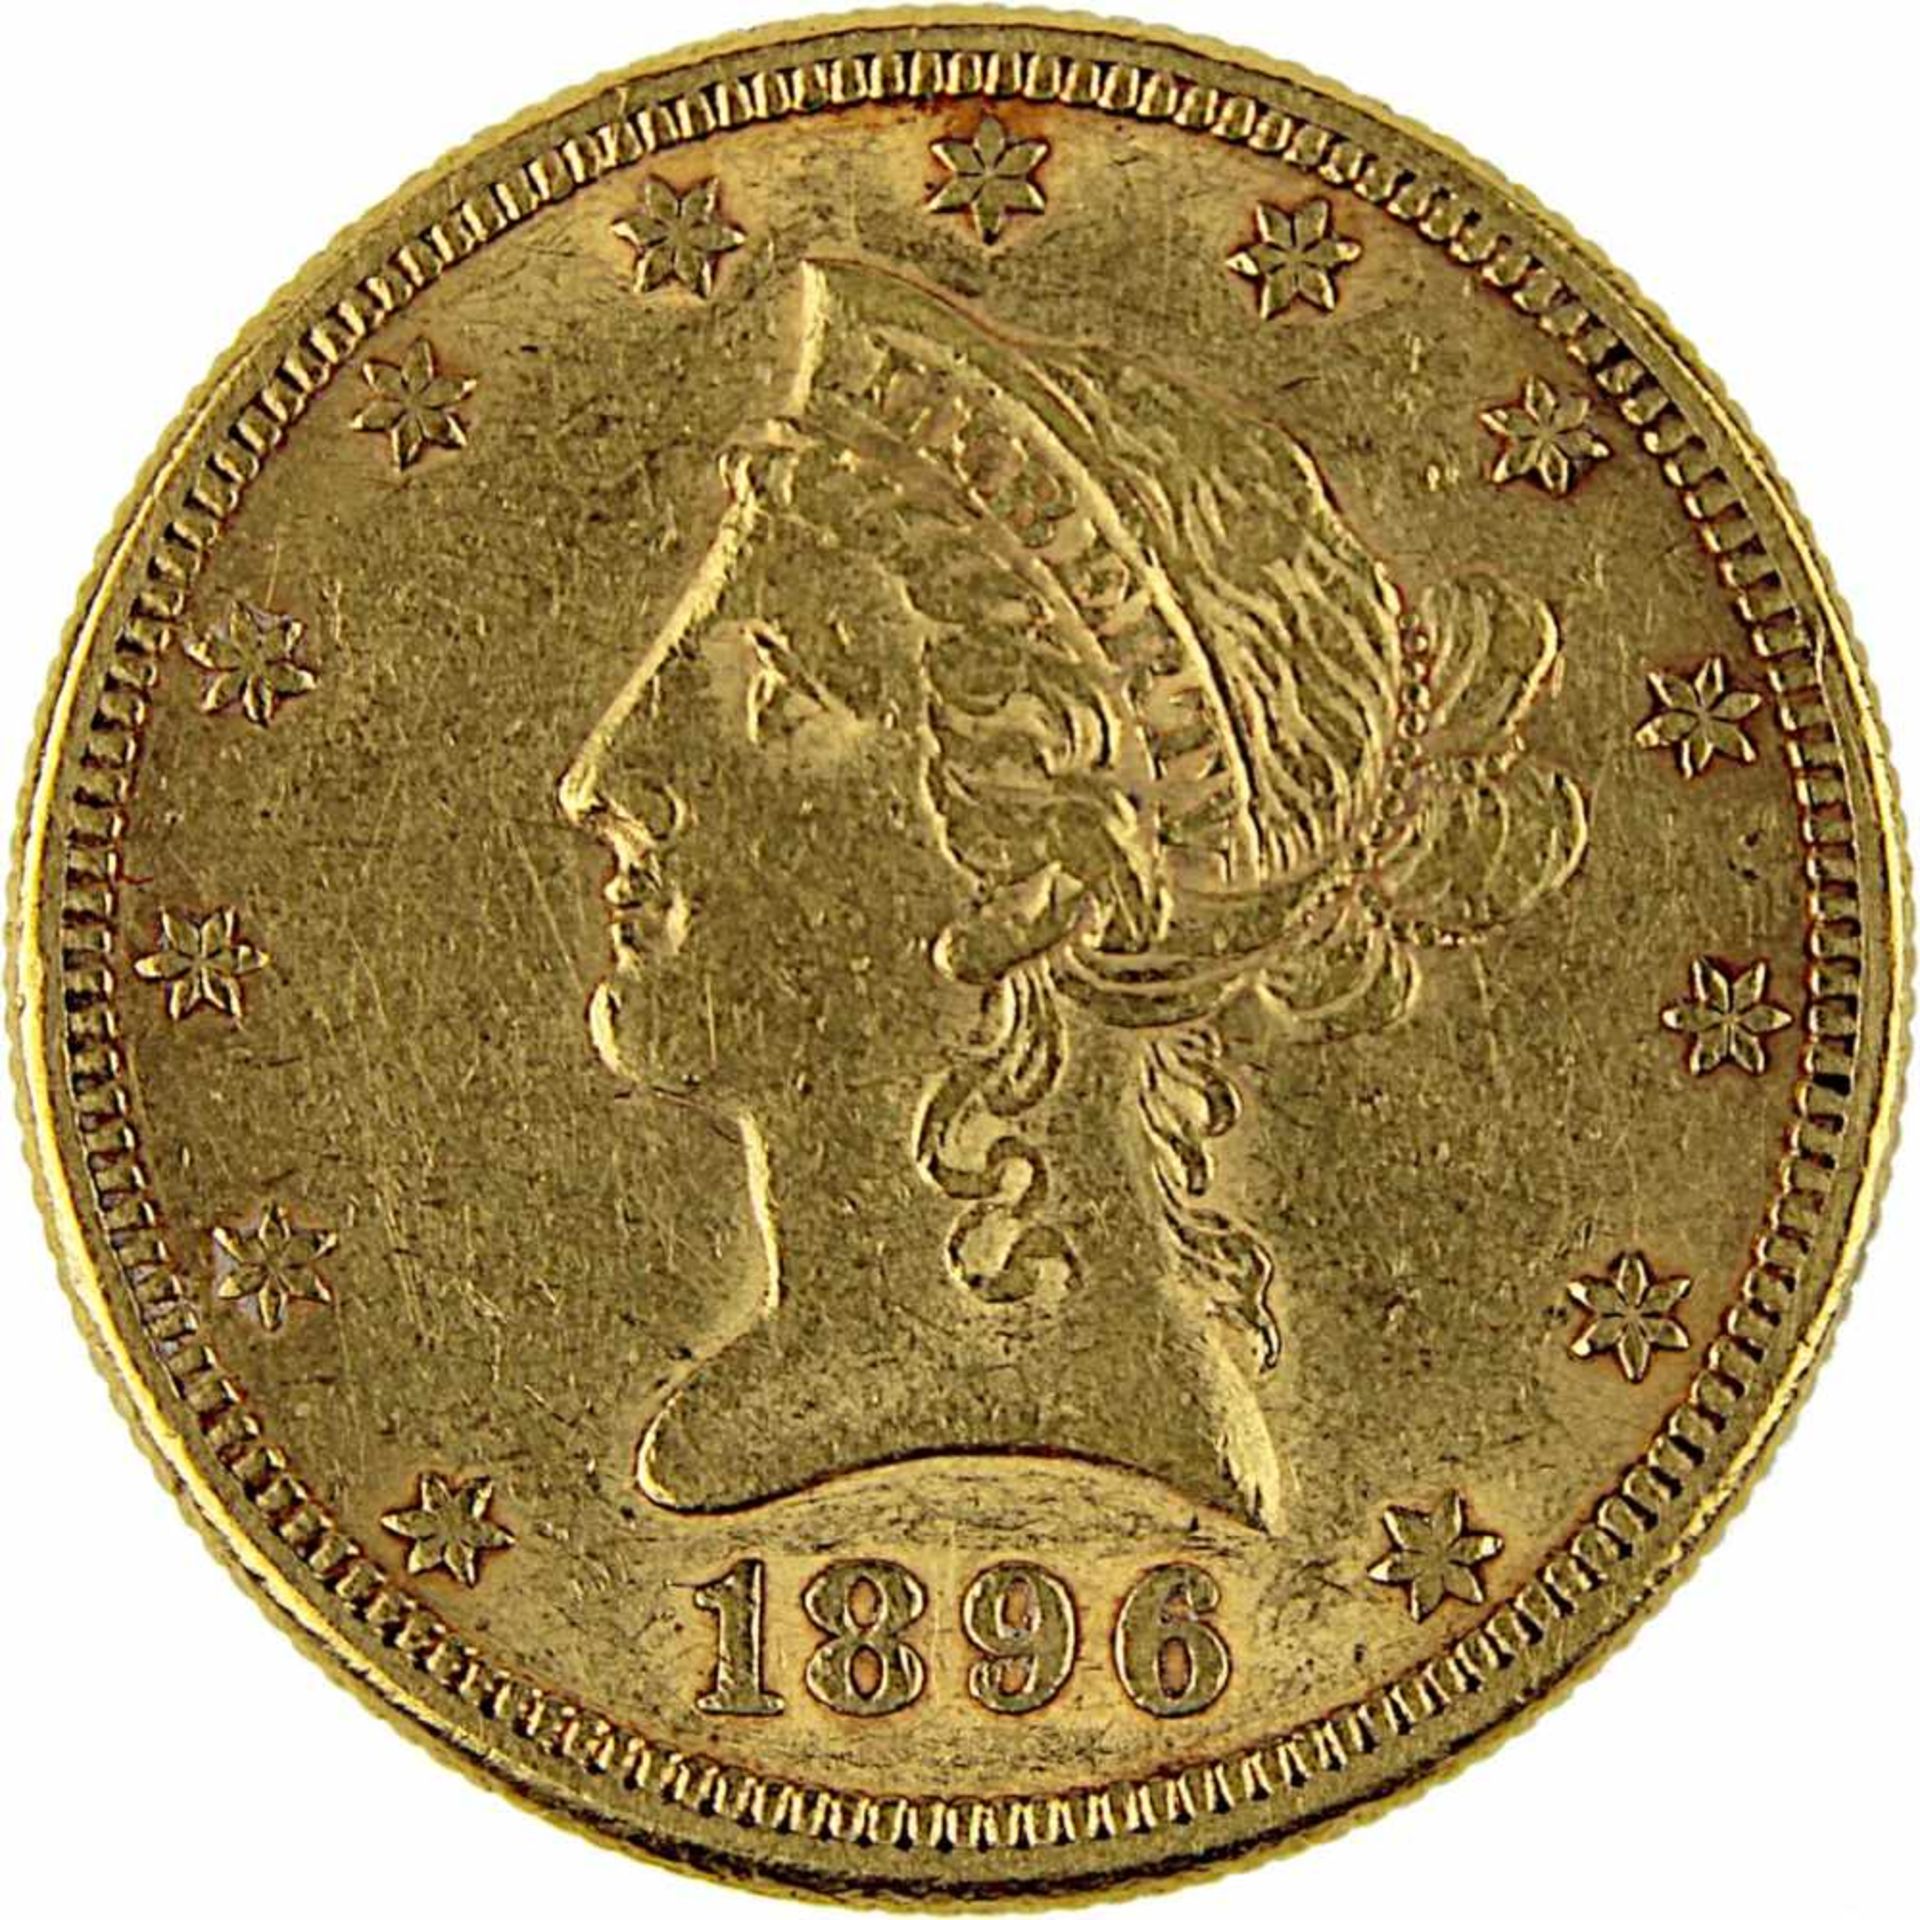 Goldmünze zu 10 Dollar, USA 1896, 900er Gold, 16,7 g, Coroned Head / Eagle, Erhaltung sehr schön - - Bild 2 aus 3